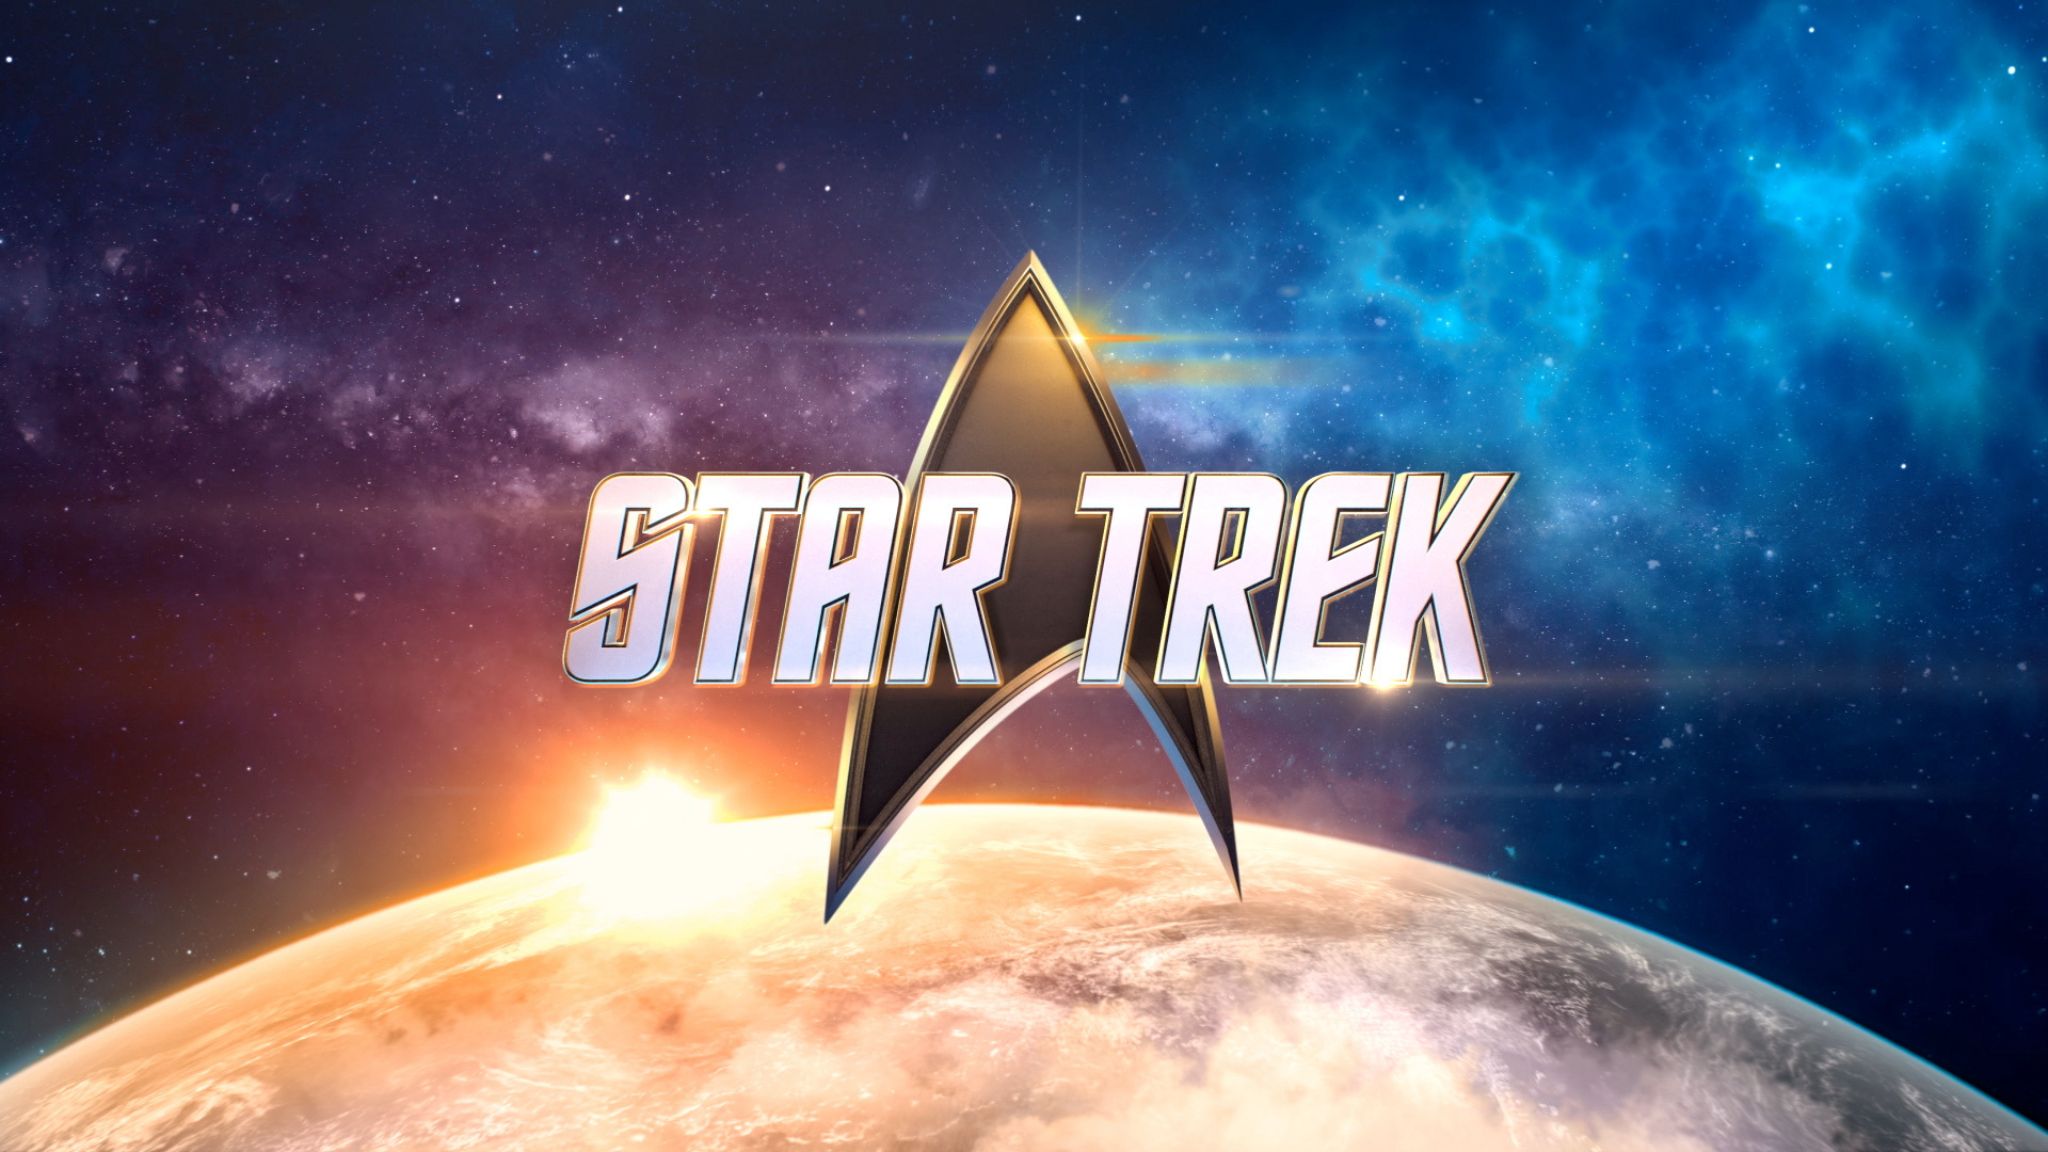 Star Trek, preocupada por la sobresaturación, apuesta ahora por una TV Movie cada 2 años